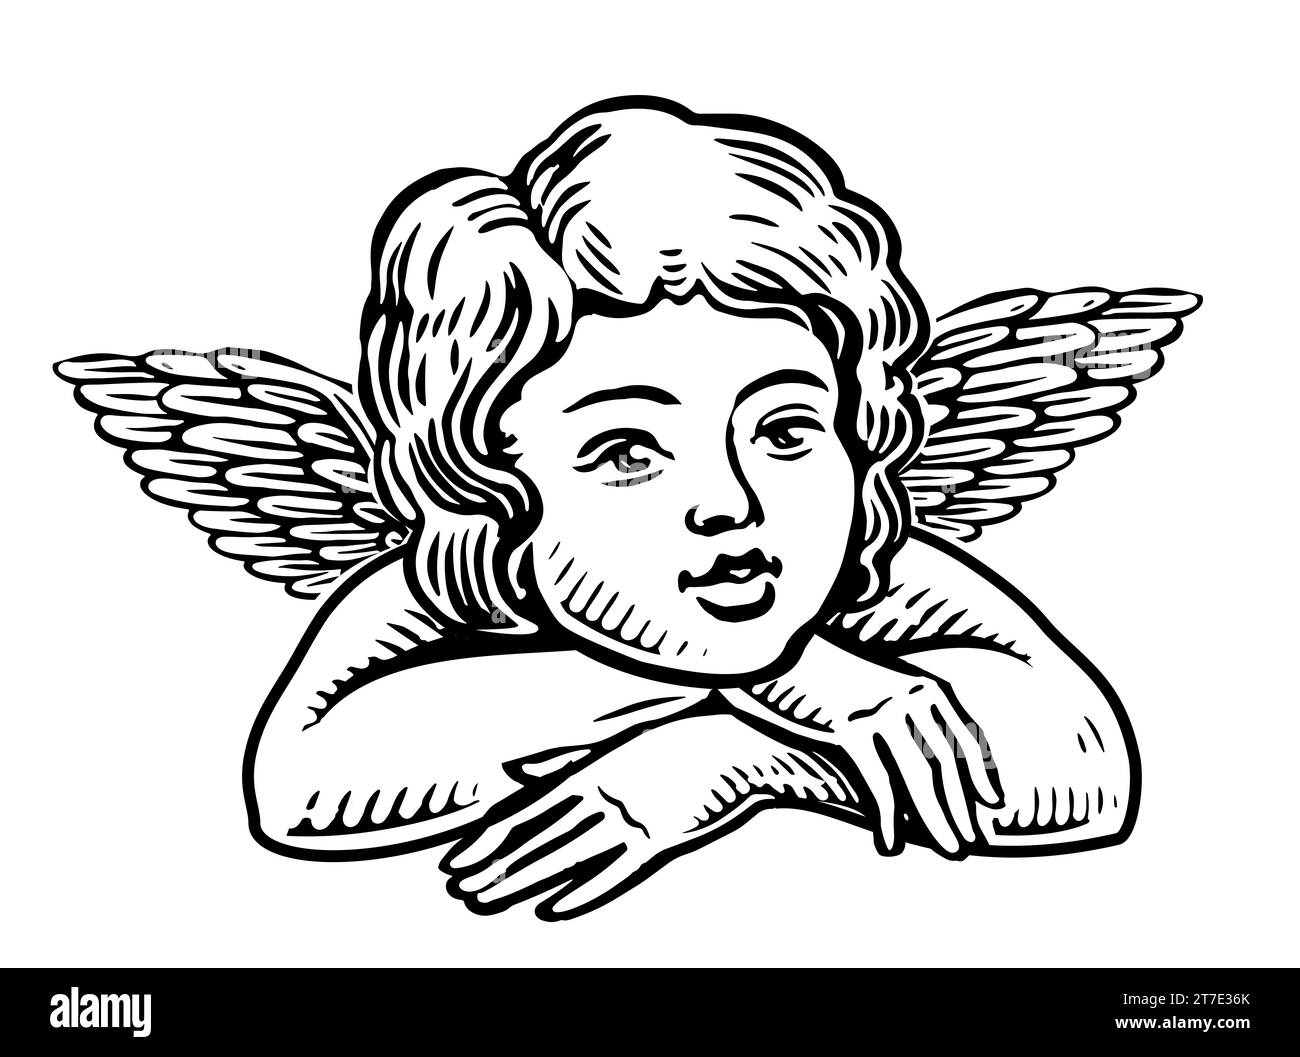 Carino bambino con le ali. Piccolo angelo disegnato a mano. Disegnare un'illustrazione vintage Foto Stock